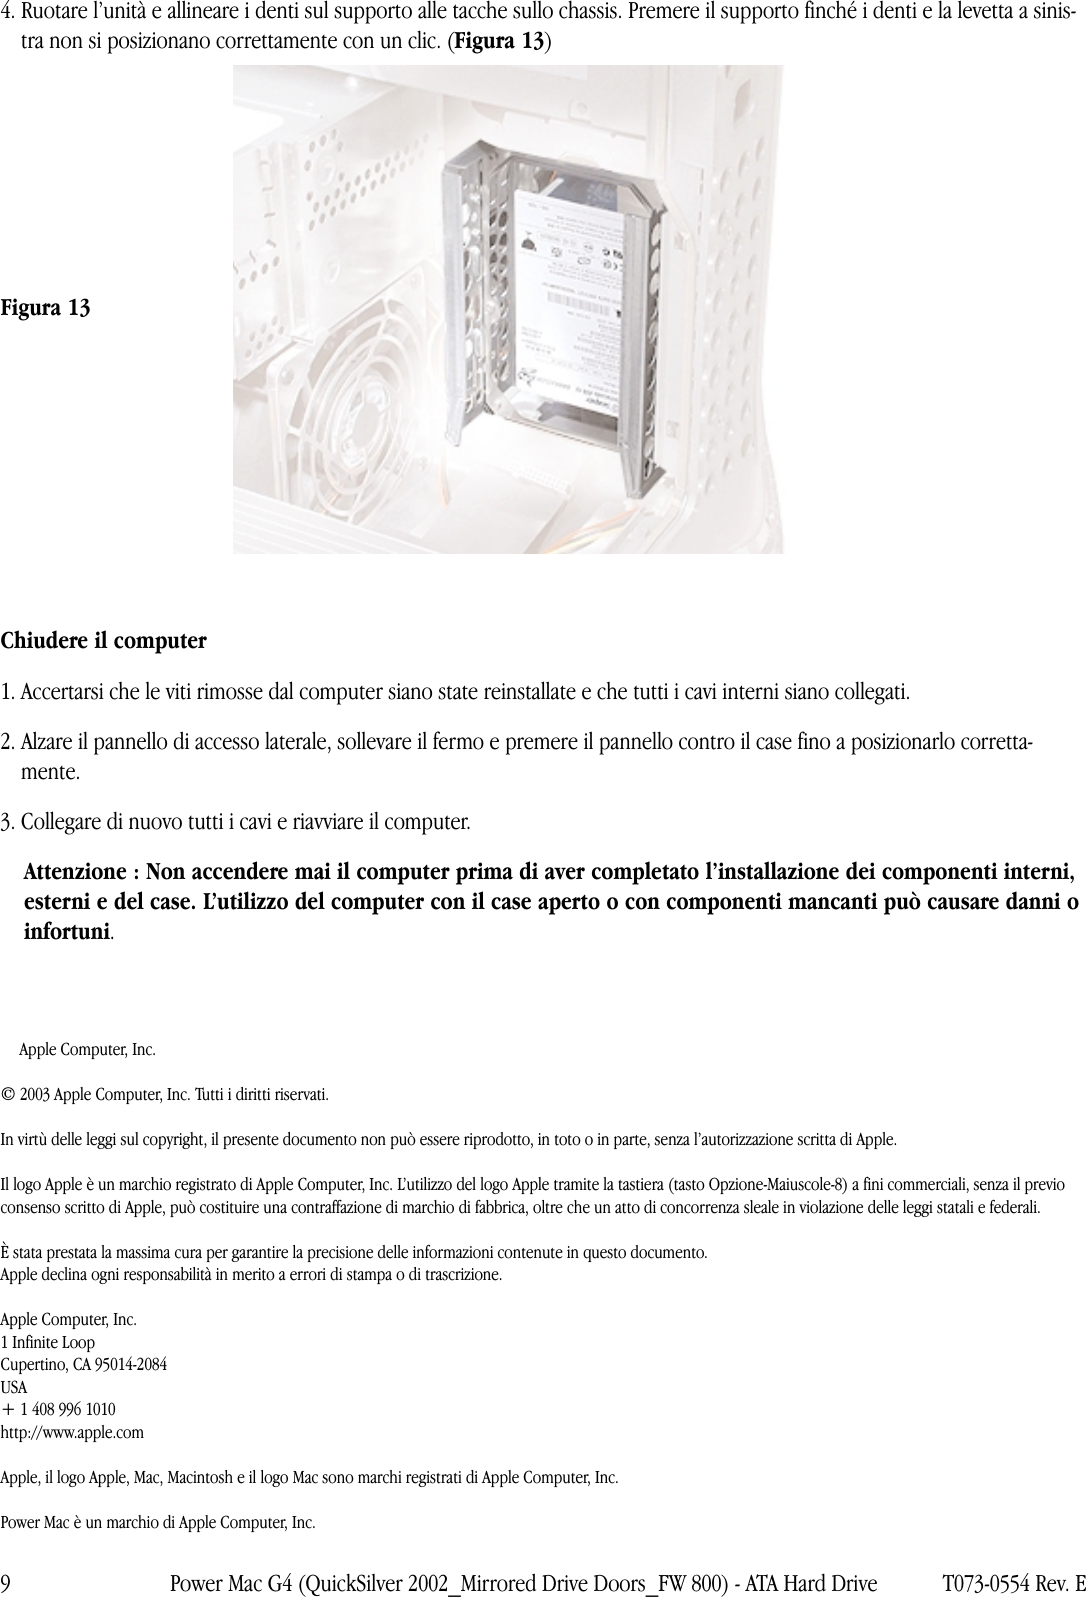 Page 9 of 9 - Apple Power Mac G4 (QuickSilver 2002) Hard Drive User Manual E Macintosh Server - Disco Rigido ATA Istruzioni Per La Sostituzione G4mdd-fw800-atadrv